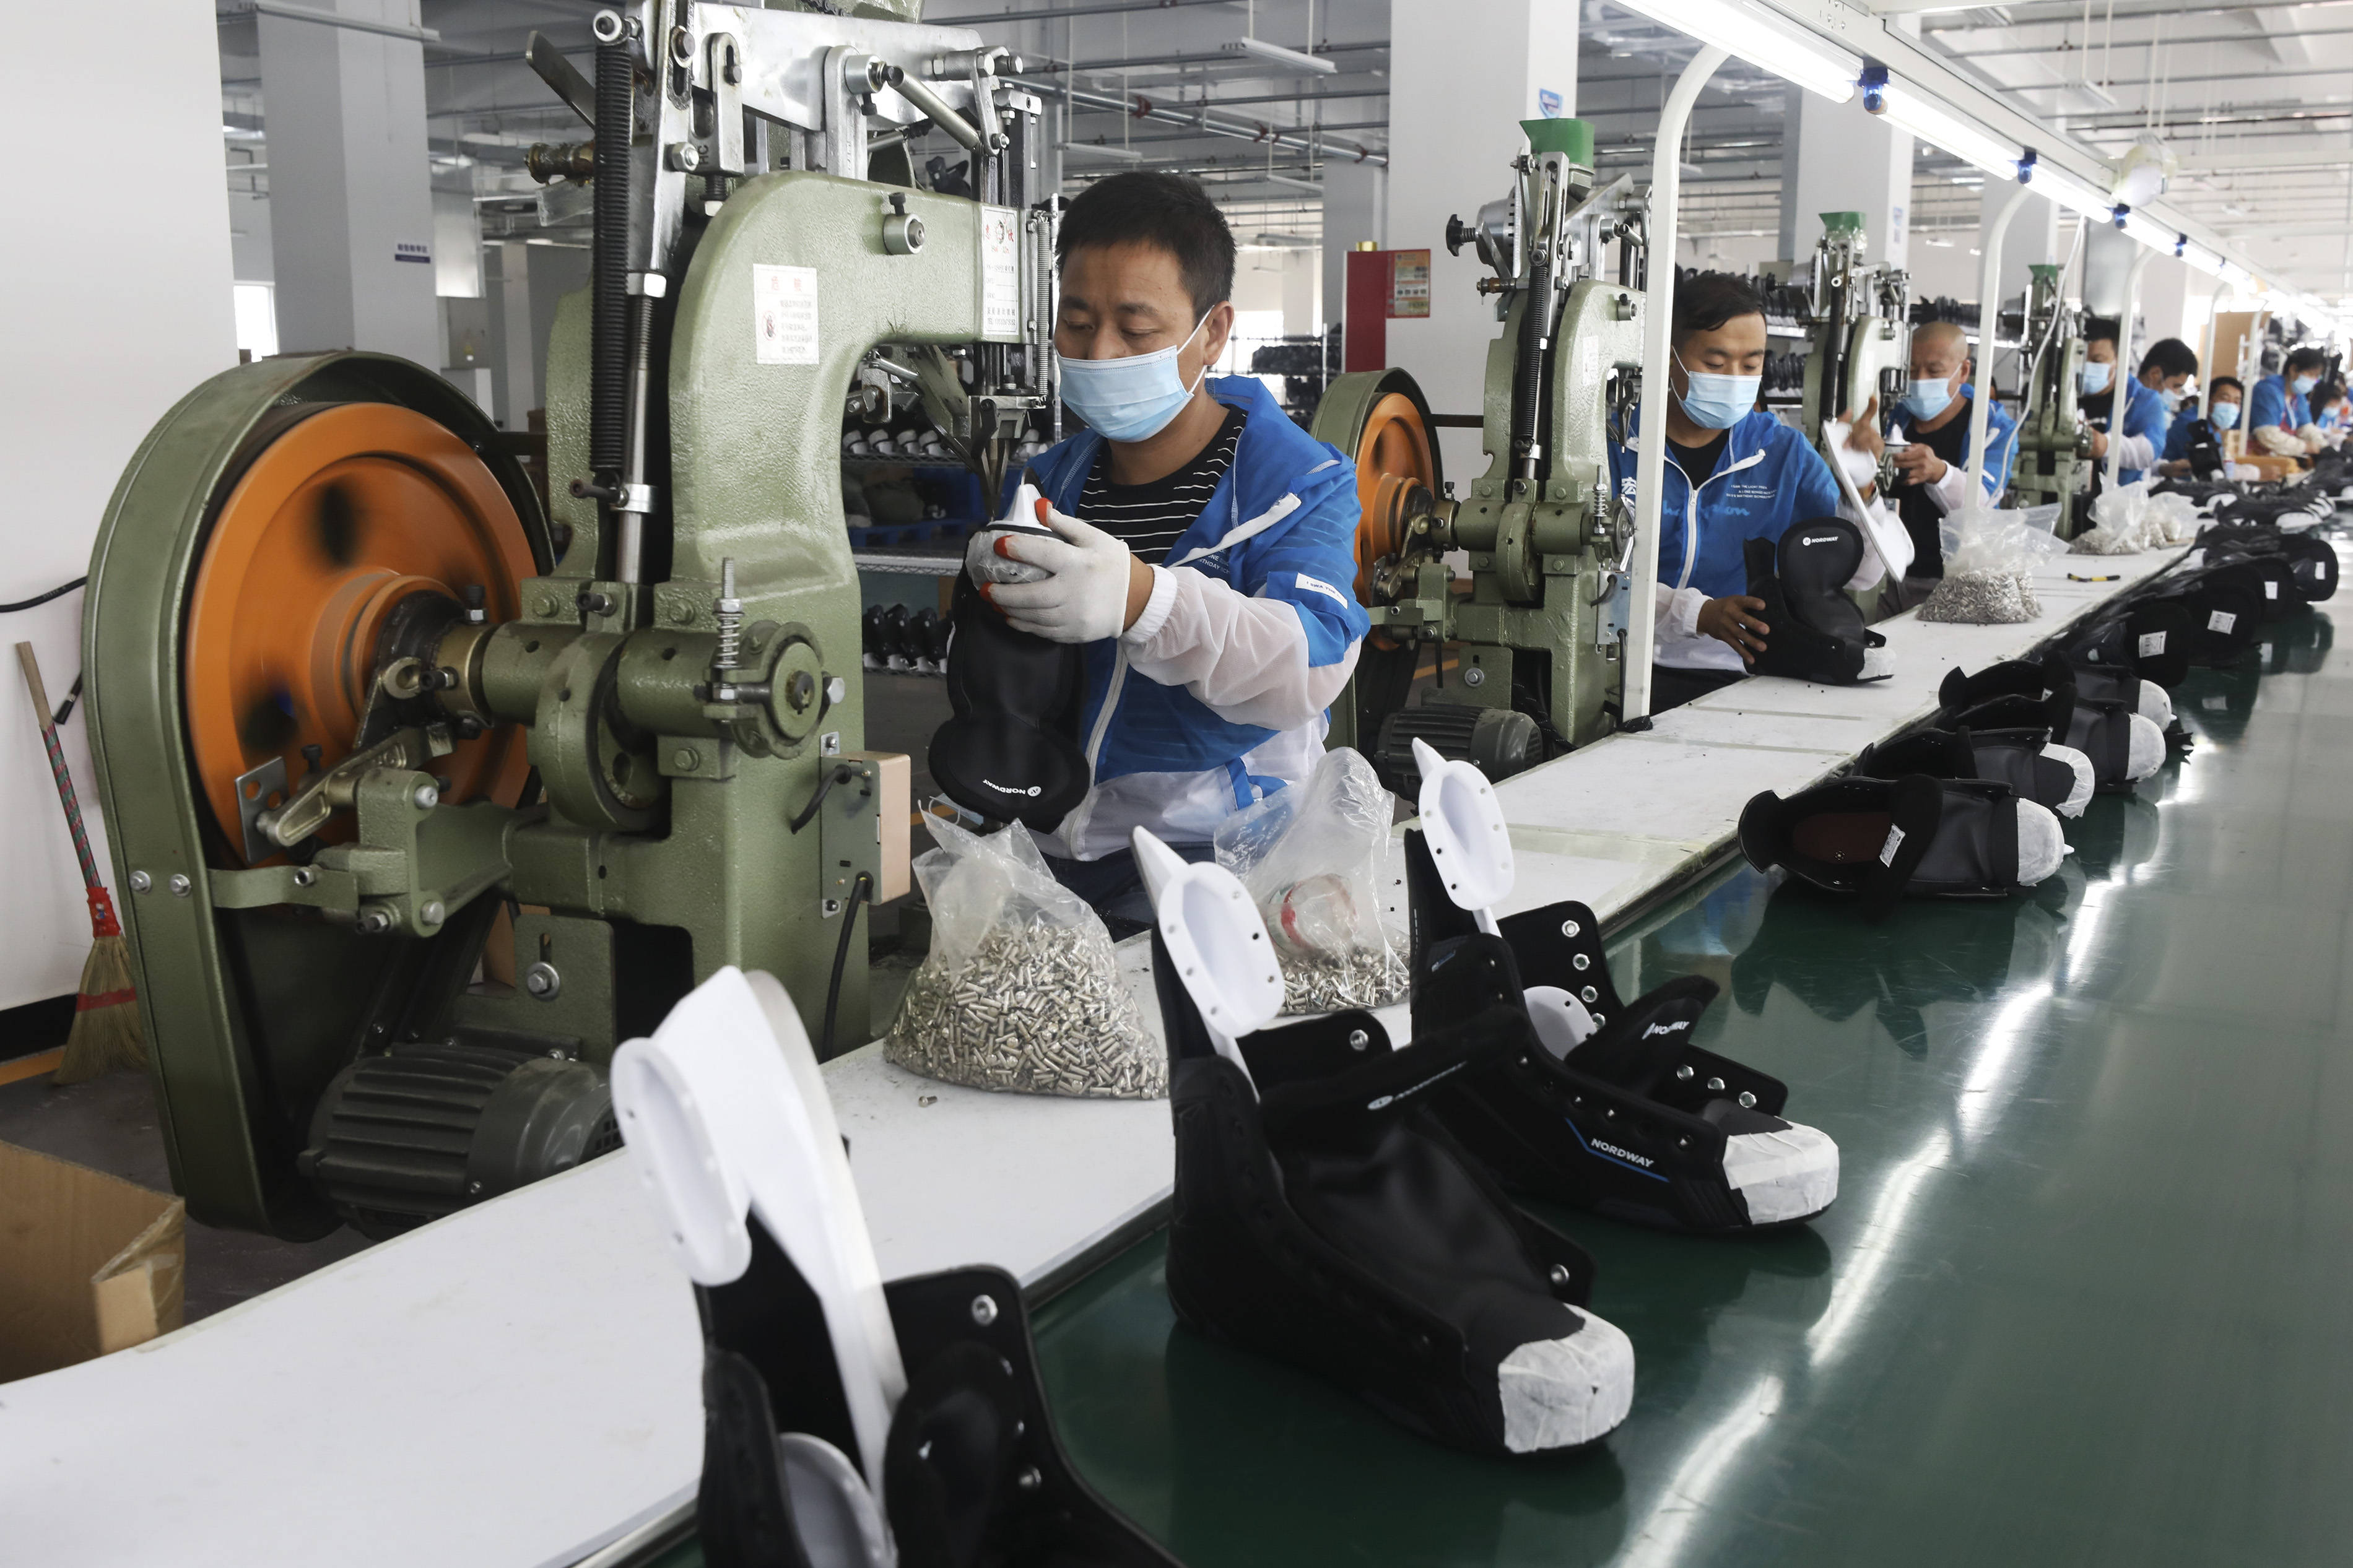 7月7日,在张家口高新区冰雪运动装备产业园,工人在一家冰球鞋生产企业